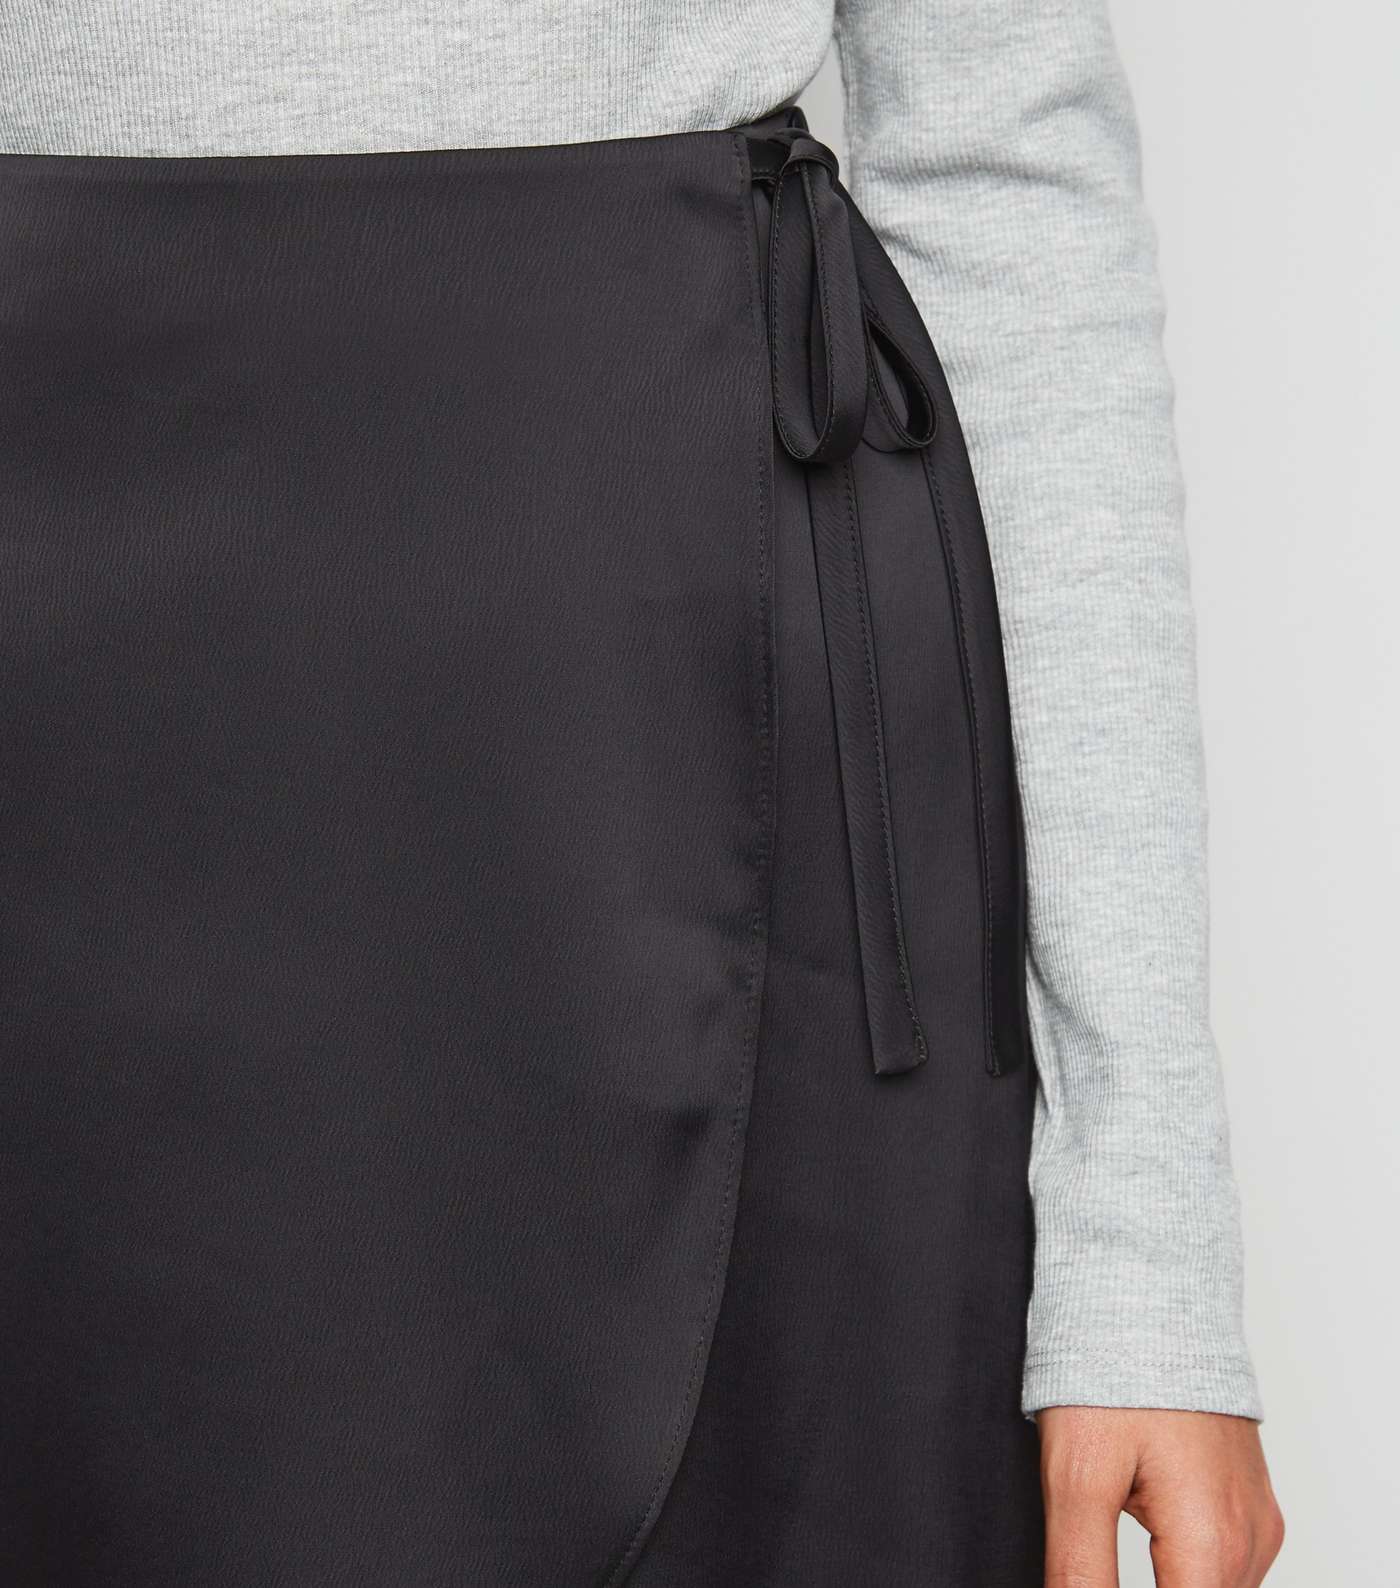 Black Satin Wrap Mini Skirt Image 5